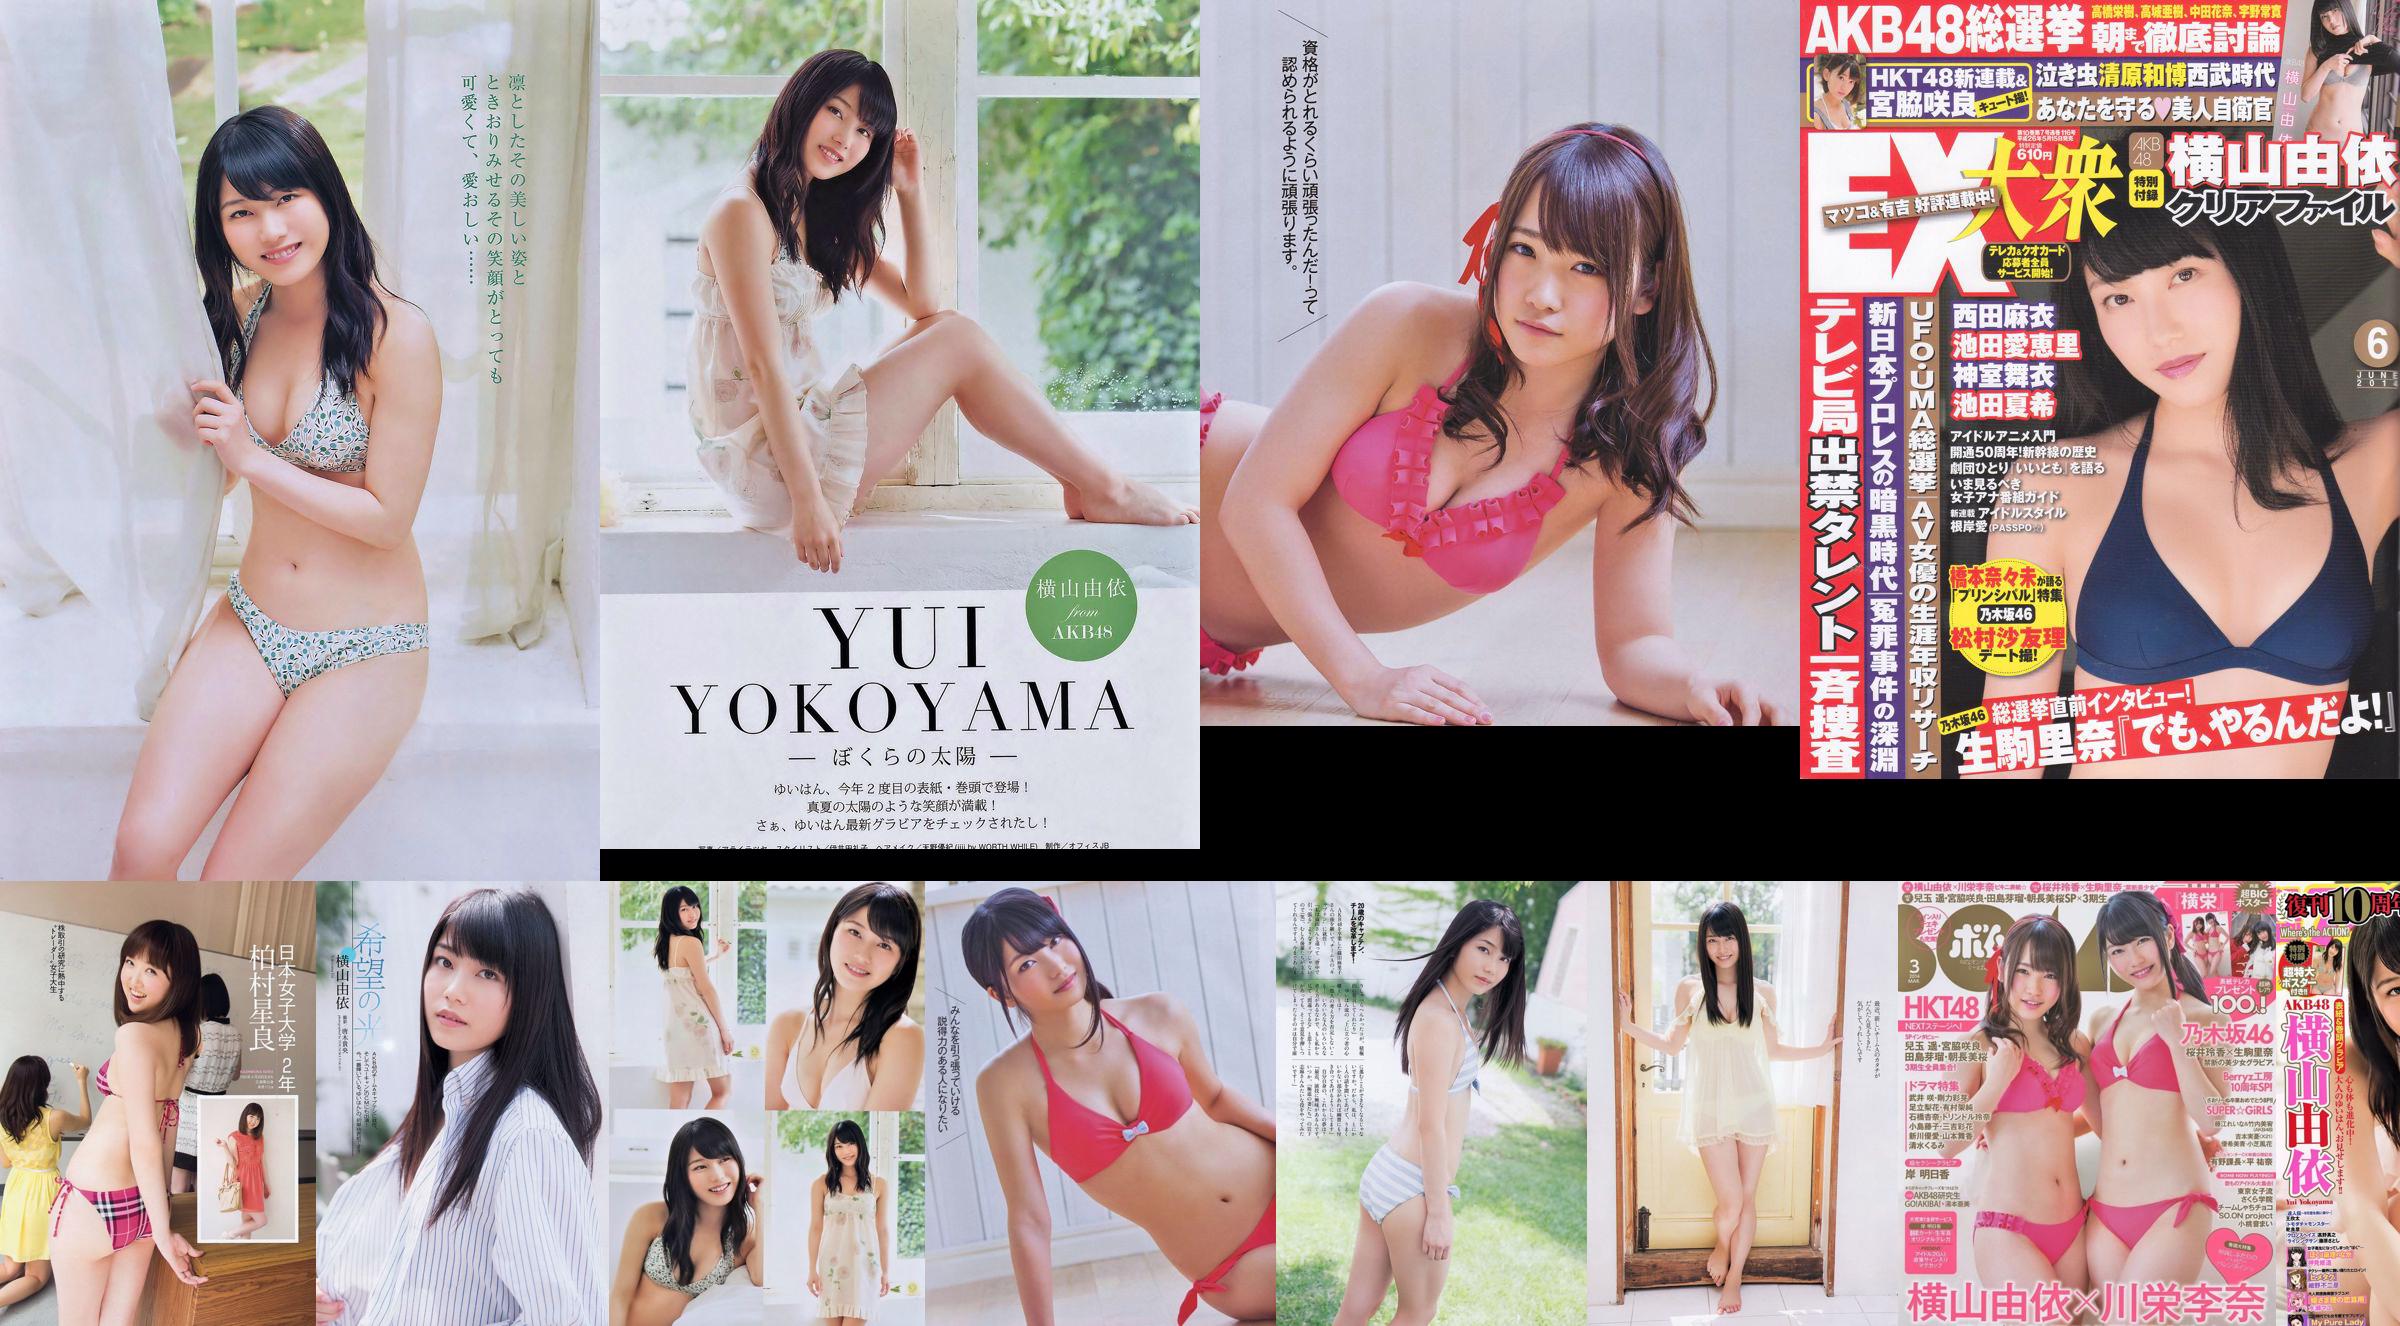 [EX Taishu] Yokoyama Yui, Miyawaki Sakura, Matsumura Sa Yuri 2014 No.06 Photo Magazine No.9ea689 Página 3